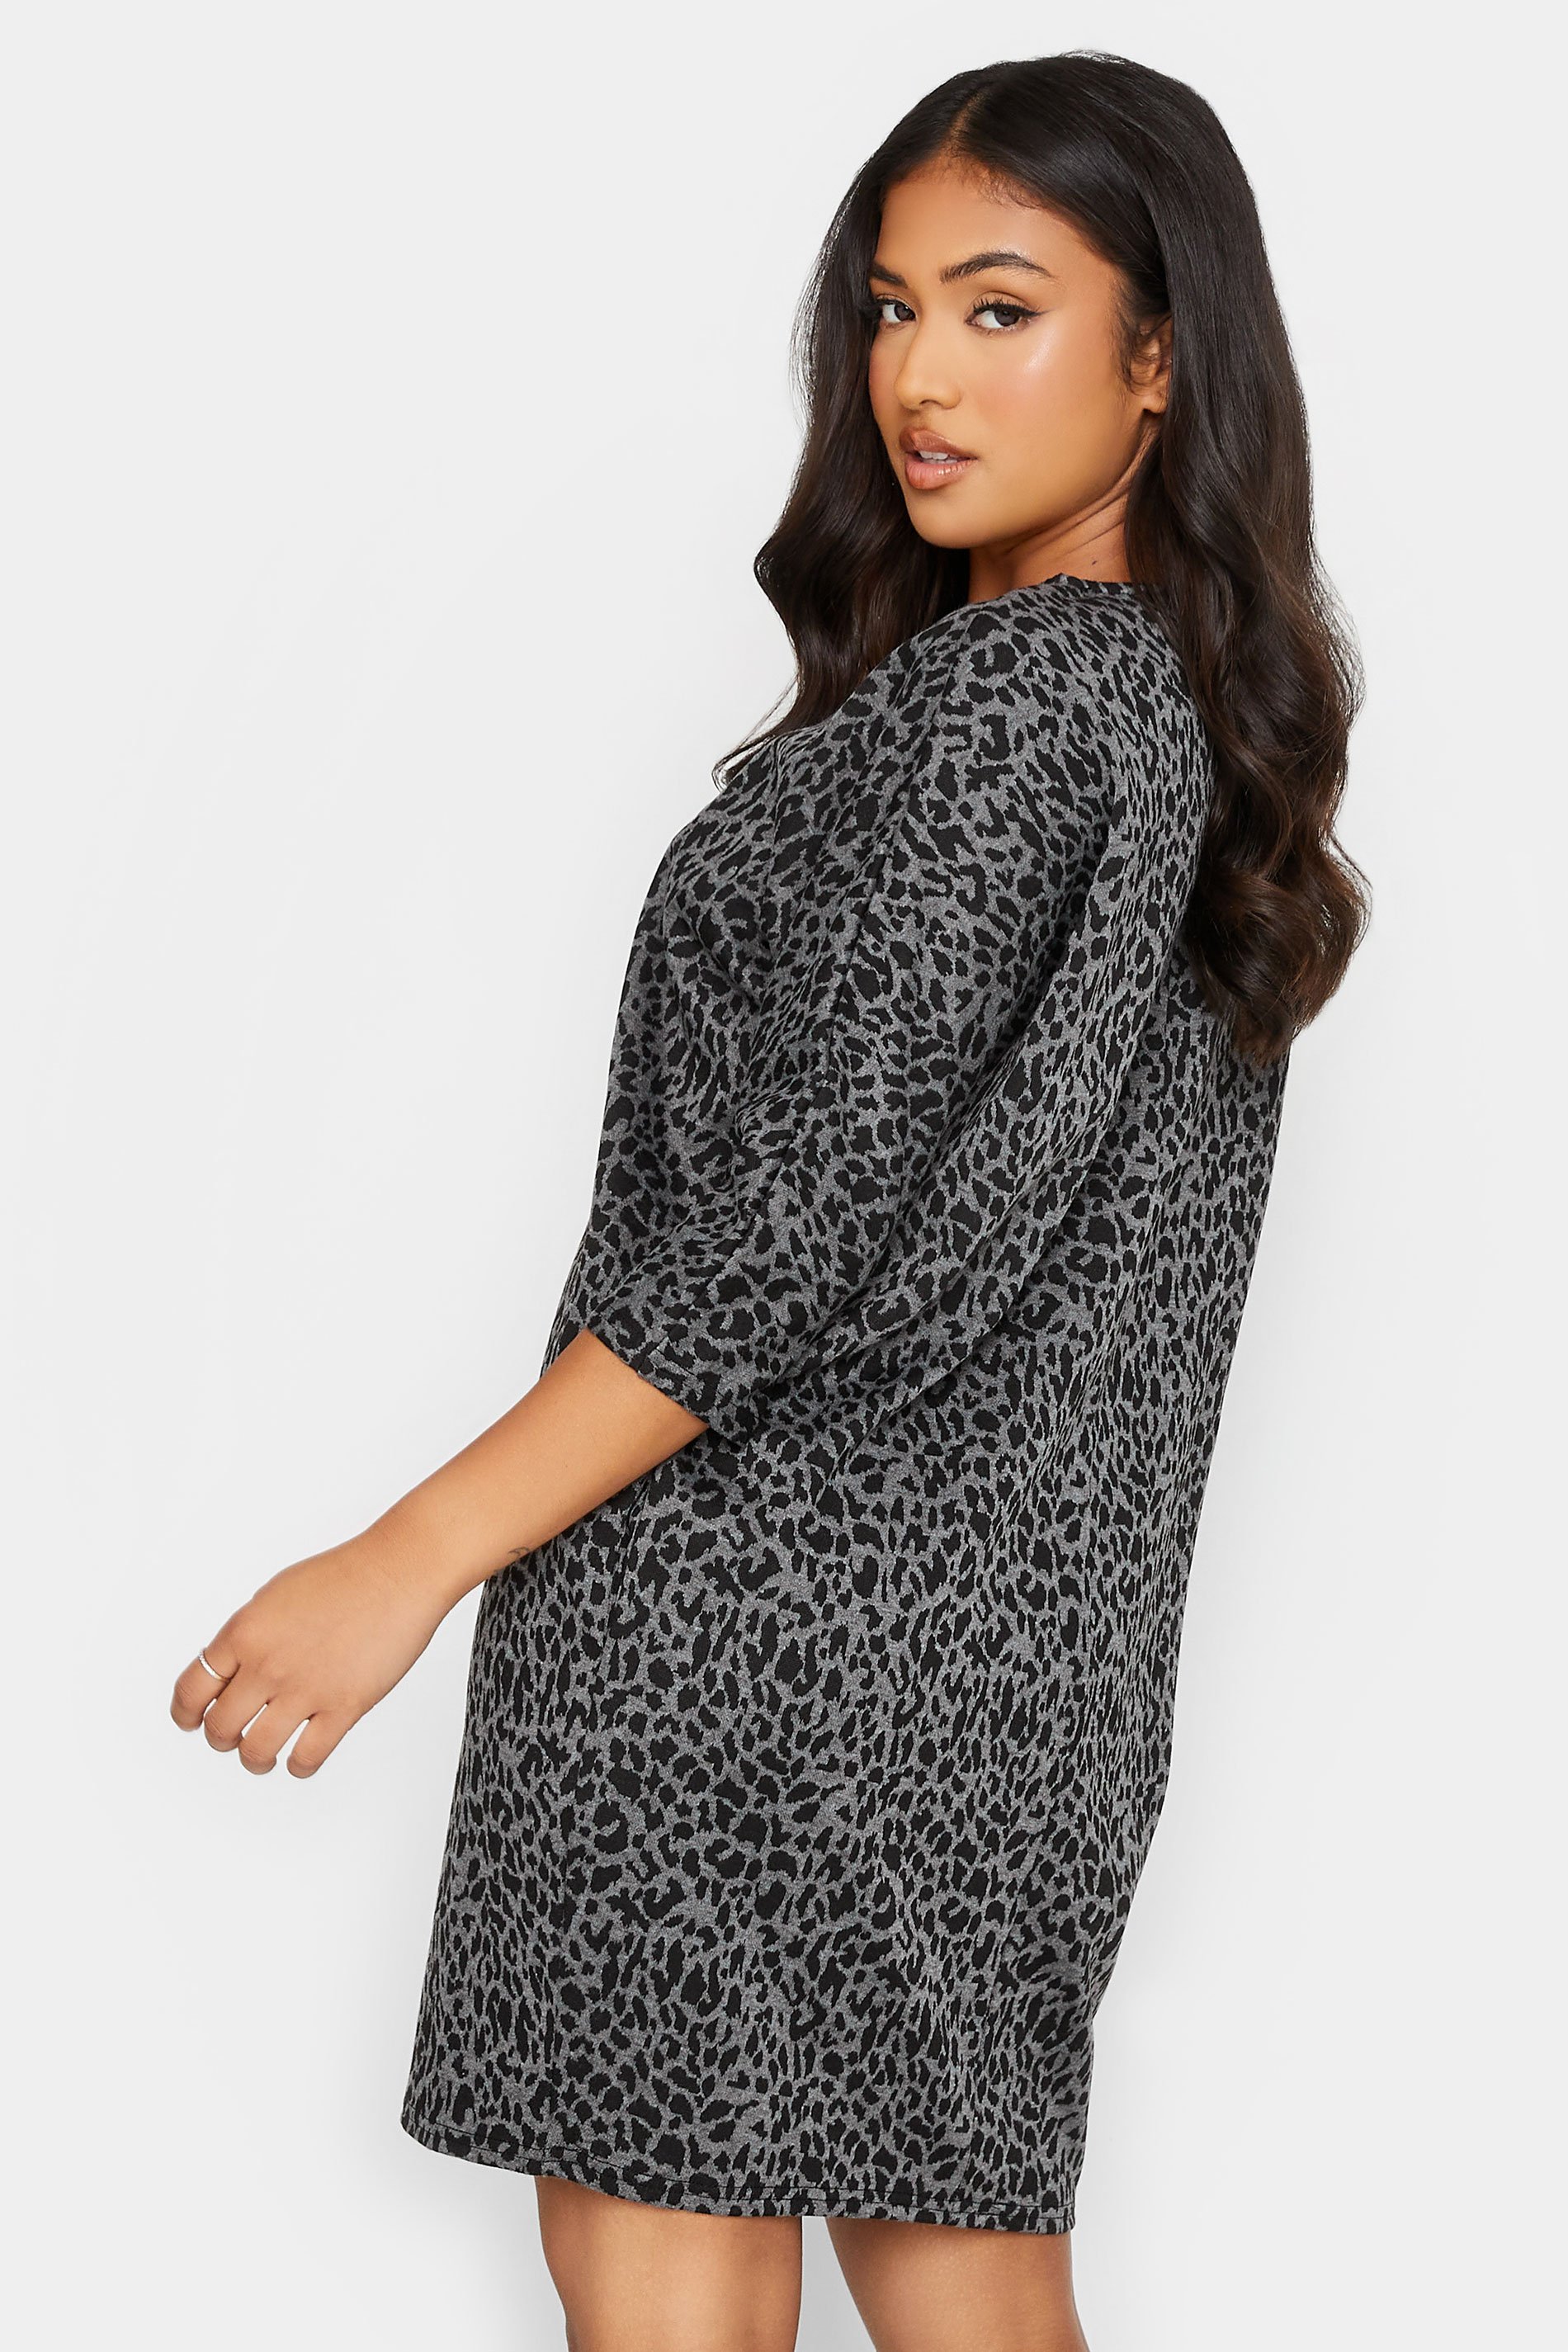 Petite Grey & Black Leopard Print Tunic Dress | PixieGirl  3